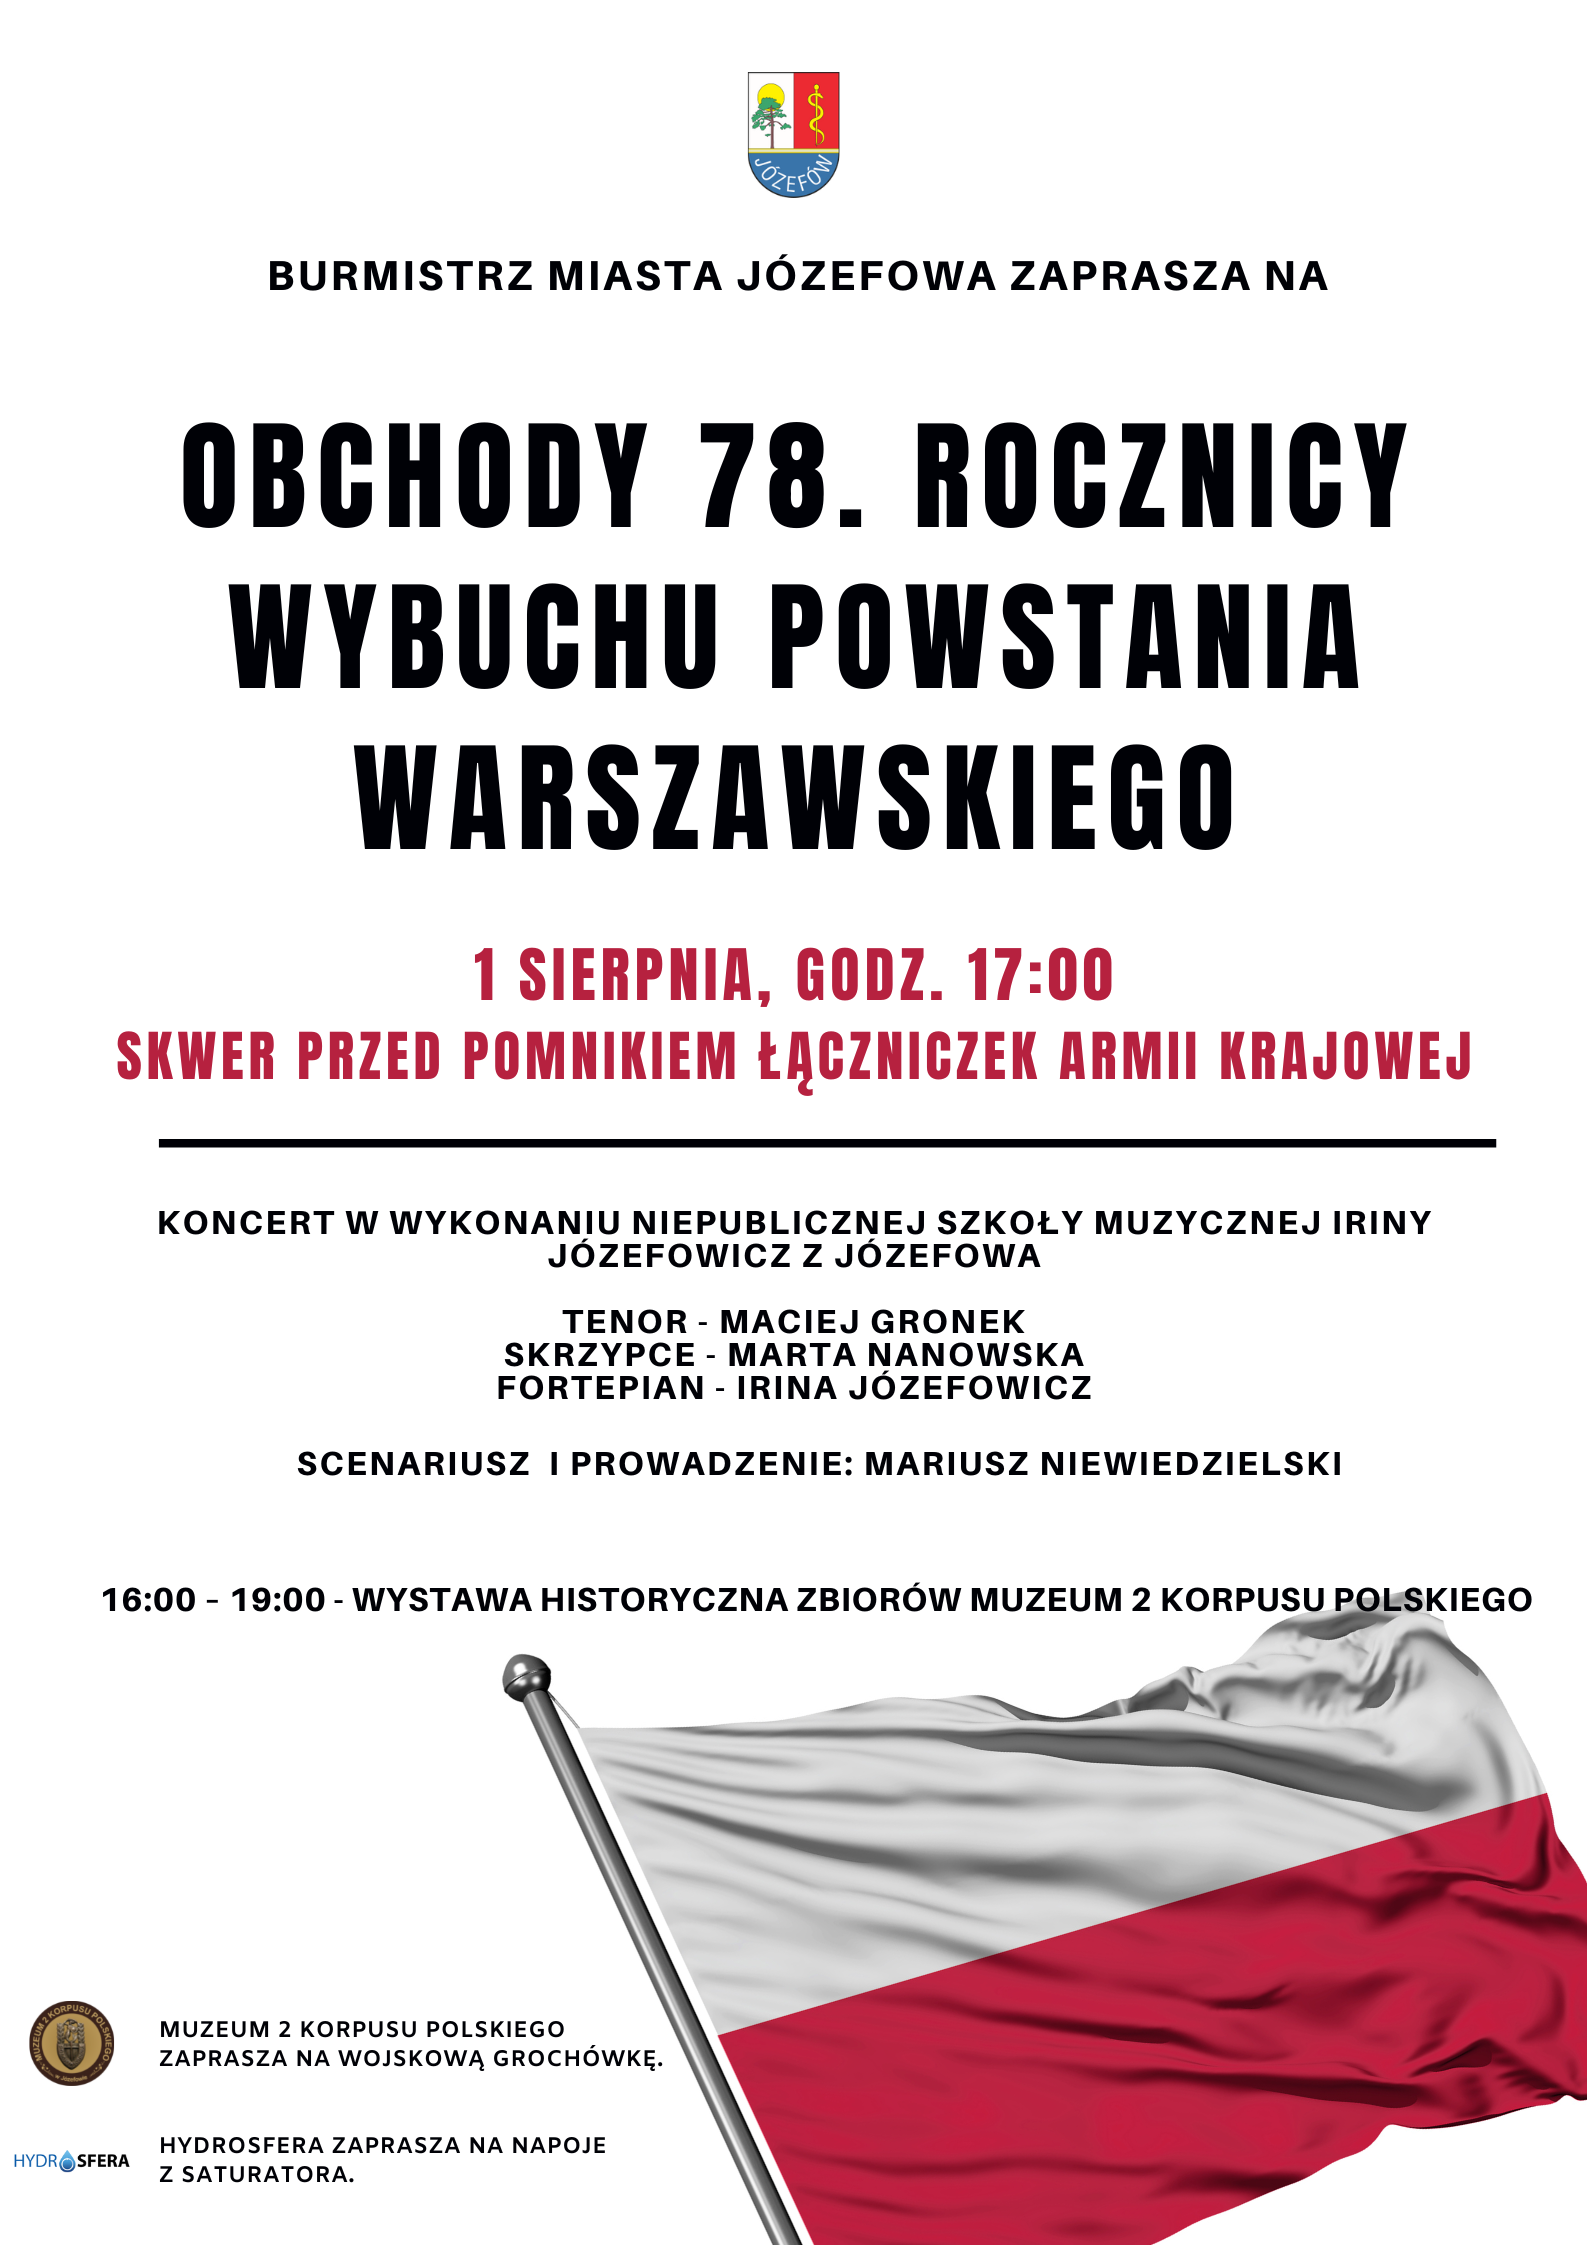 Plakat z flagą Polski i informacjami o wydarzeniu.